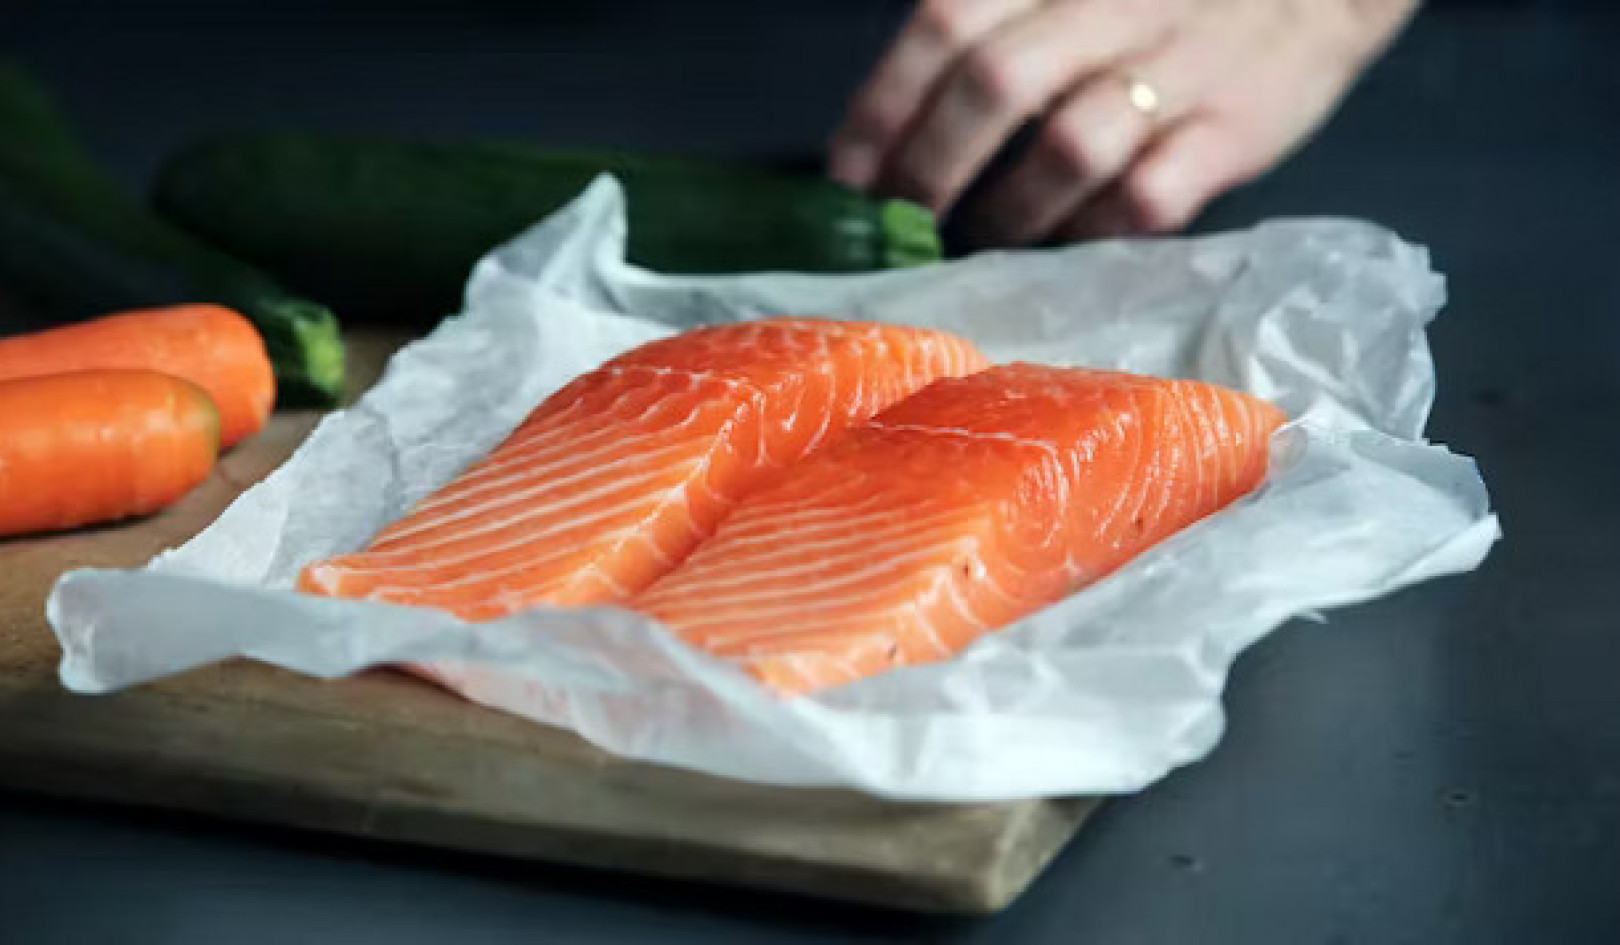 עובדות שמן דגים: האם תוספי מזון מועילים כמו אכילת דגים?